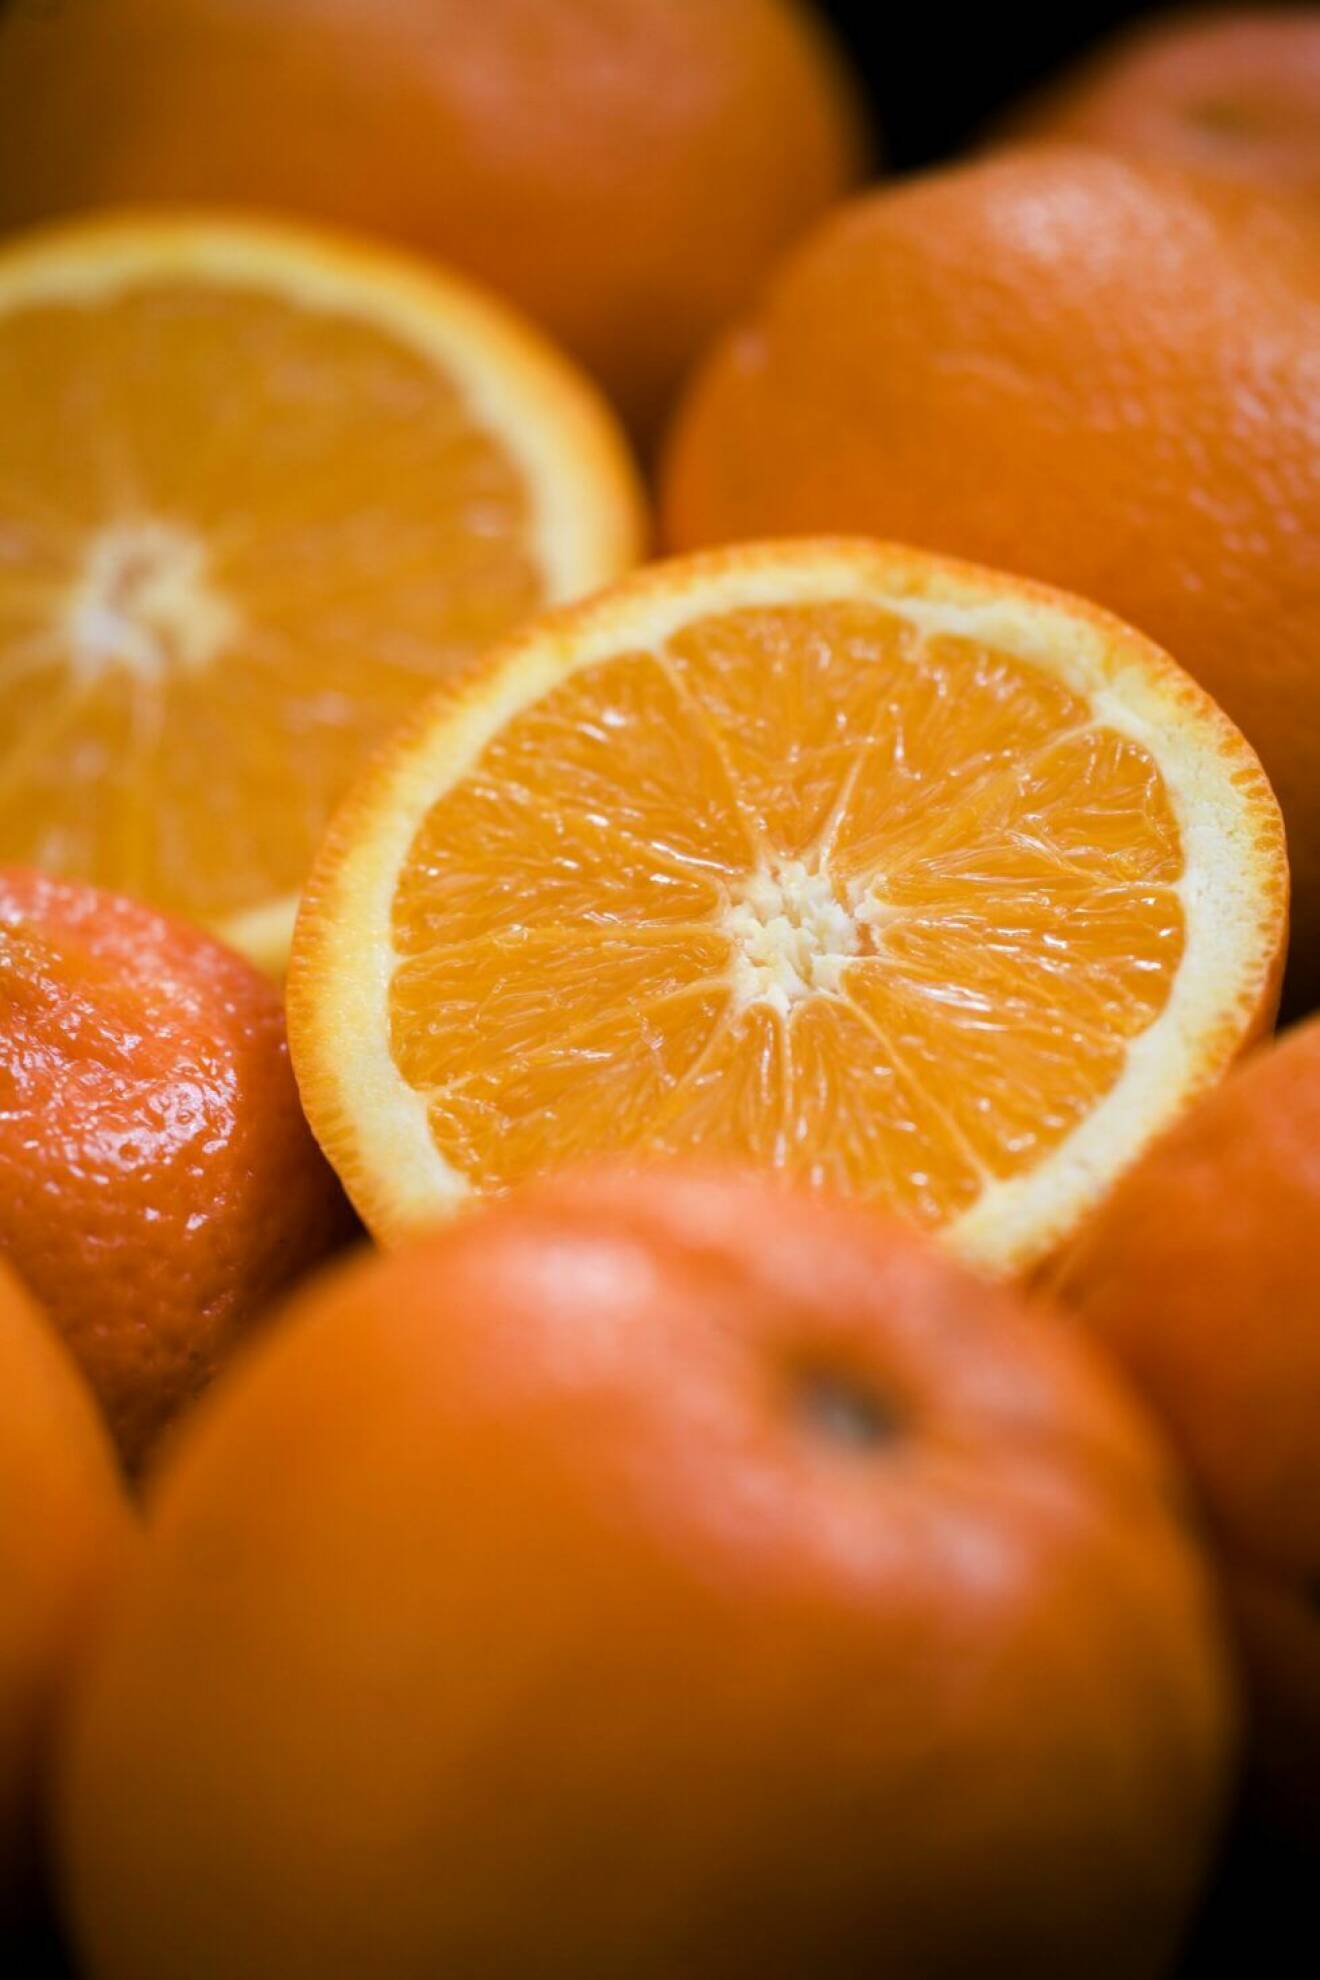 Citrusfrukter hjälper mot bakfyllan